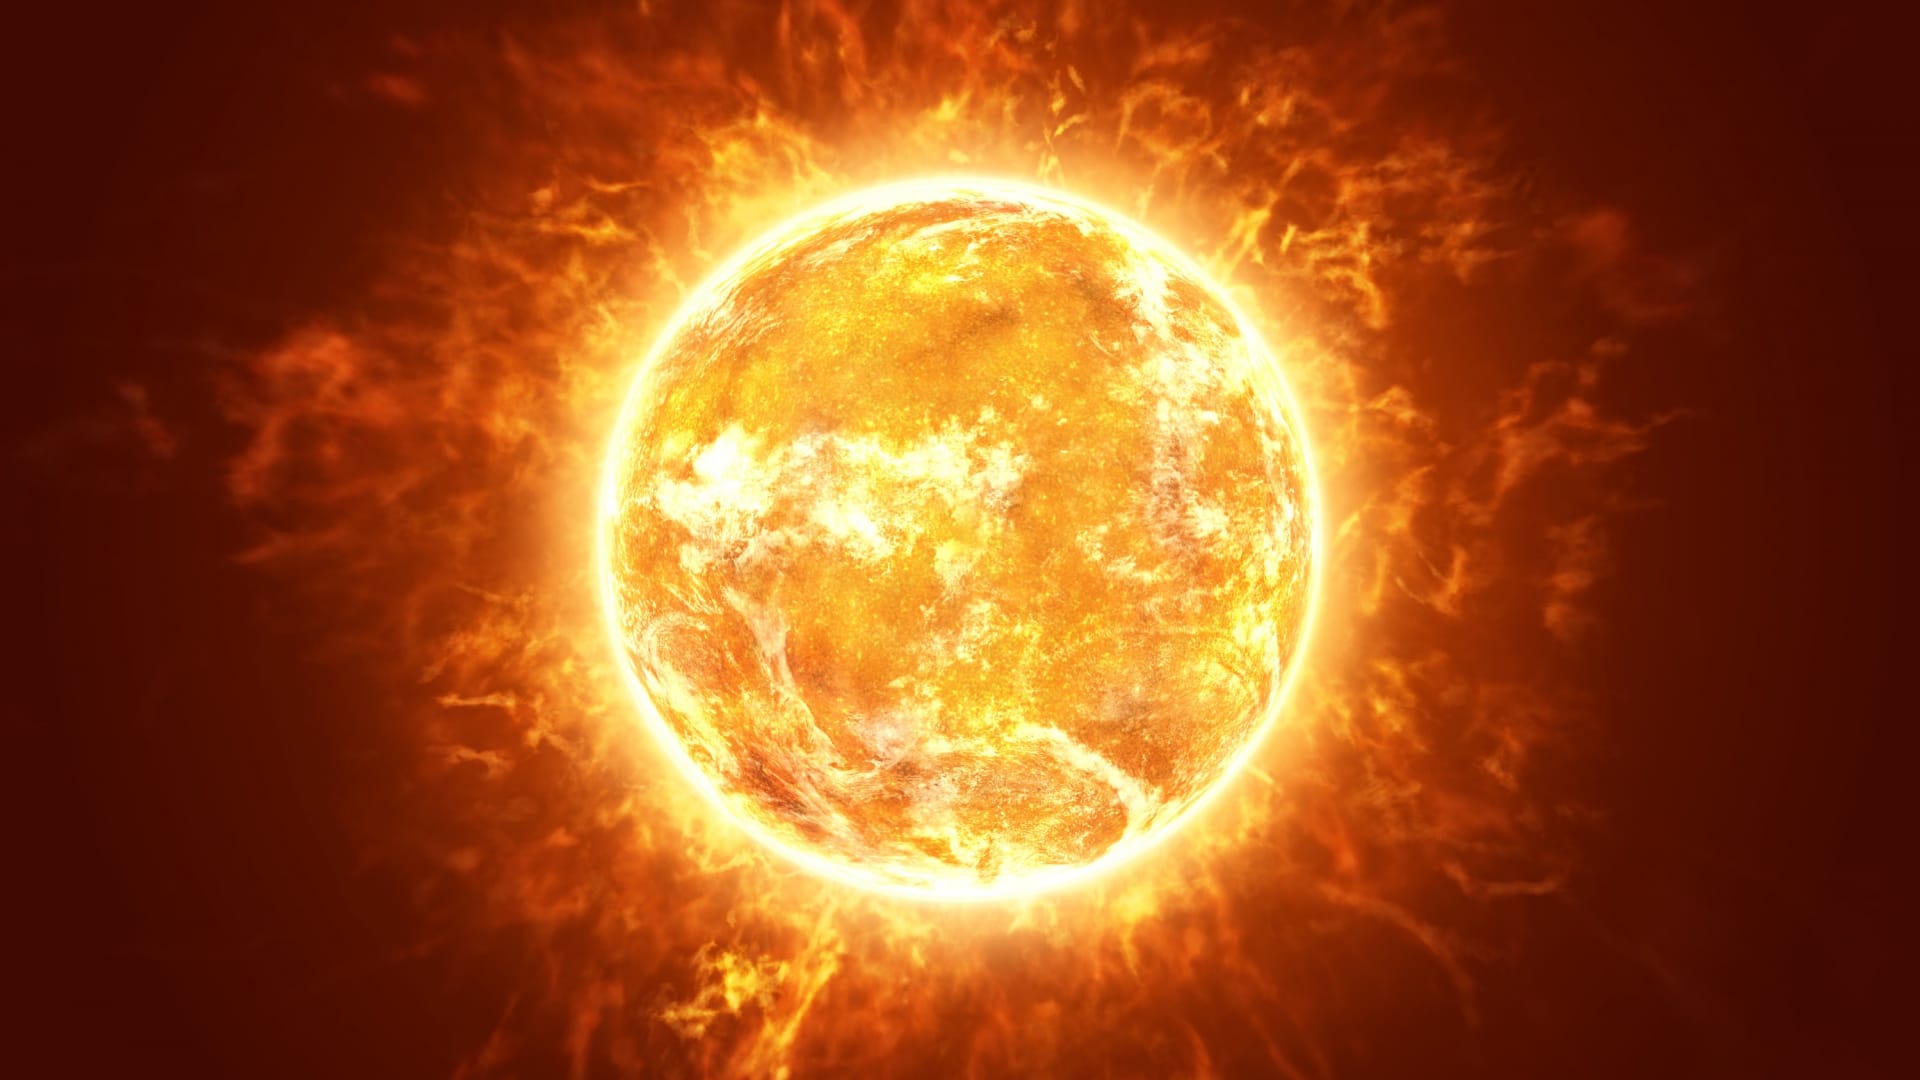 Slunce jednou zničí všechen život na Zemi